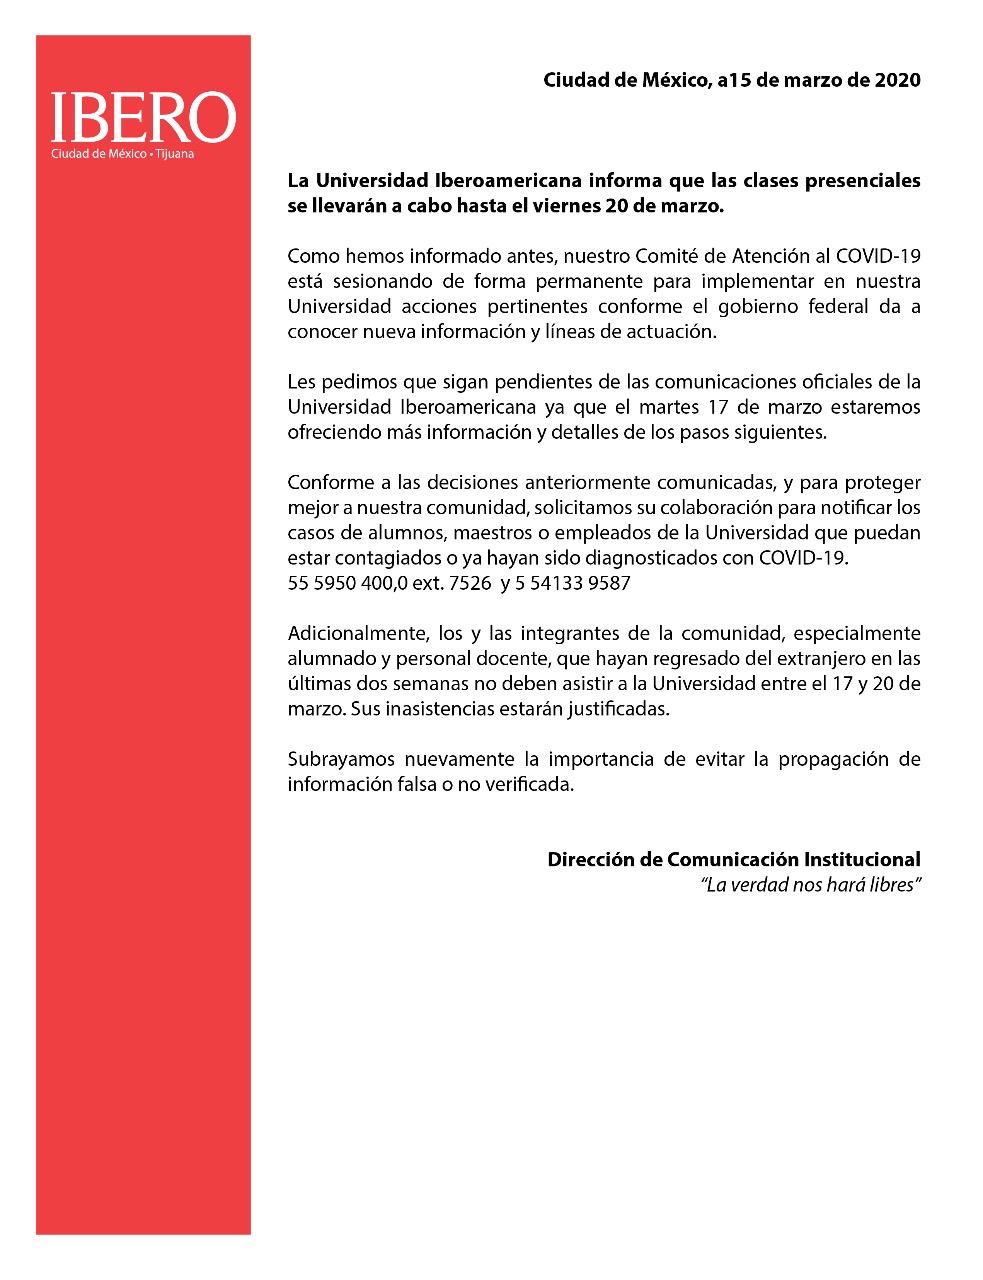 La Ibero también suspenderá clases presenciales el 20 de marzo por coronavirus